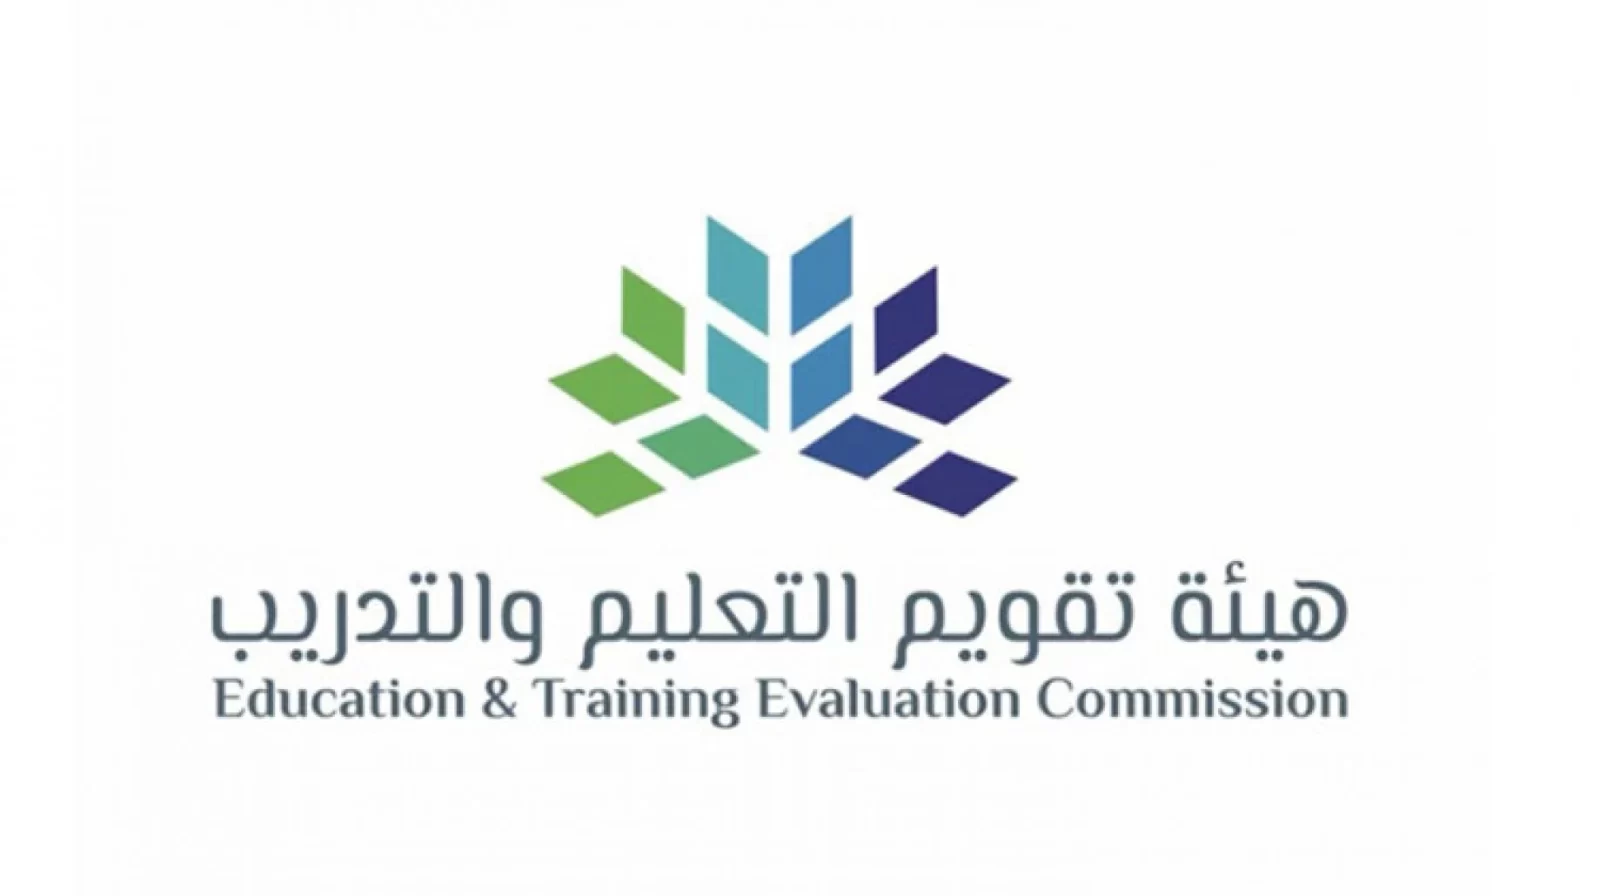 تقويم التعليم والتدريب السعودية تعلن عن موعد التسجيل في اختبار القدرة المعرفية الورقي - هيئة تقويم التعليم والتدريب السعودية تعلن عن موعد التسجيل في اختبار القدرة المعرفية الورقي